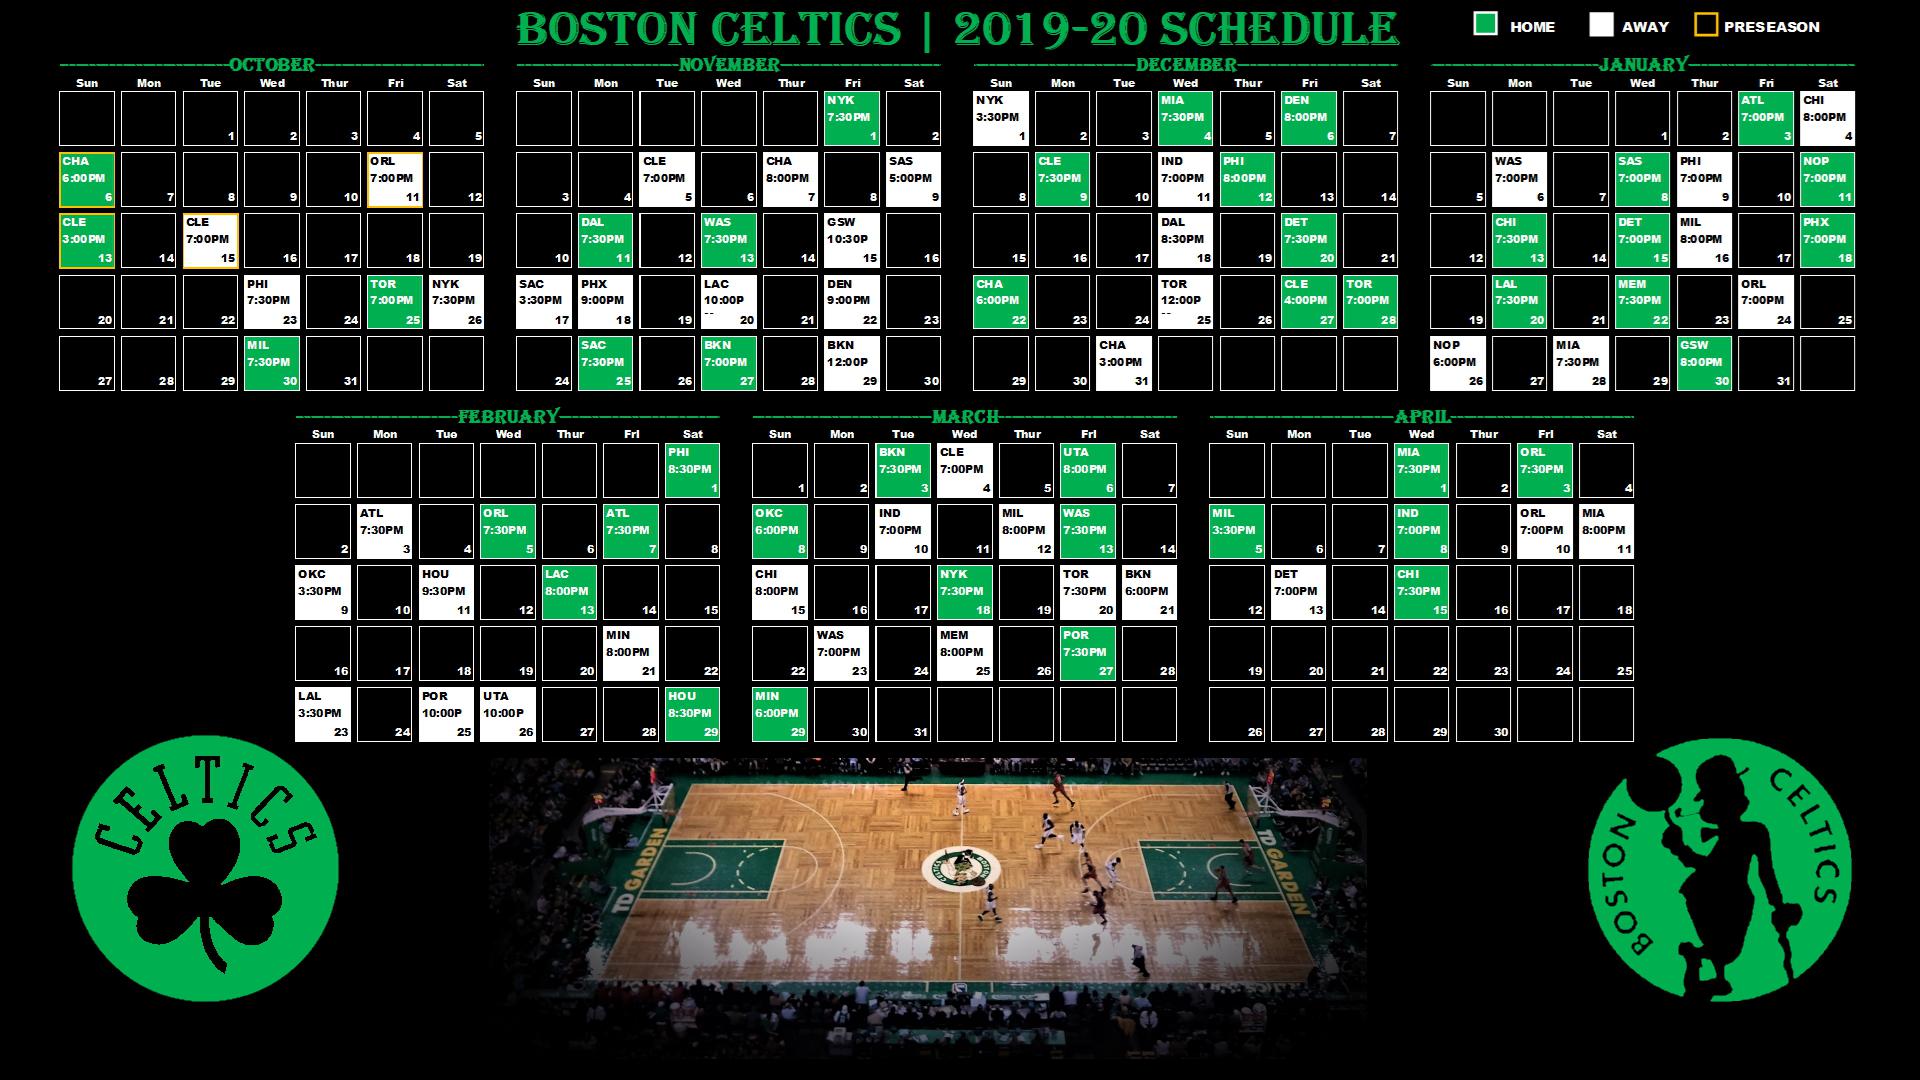 Free download Celtics Wallpaper Calendar 1920x1080 bostonceltics